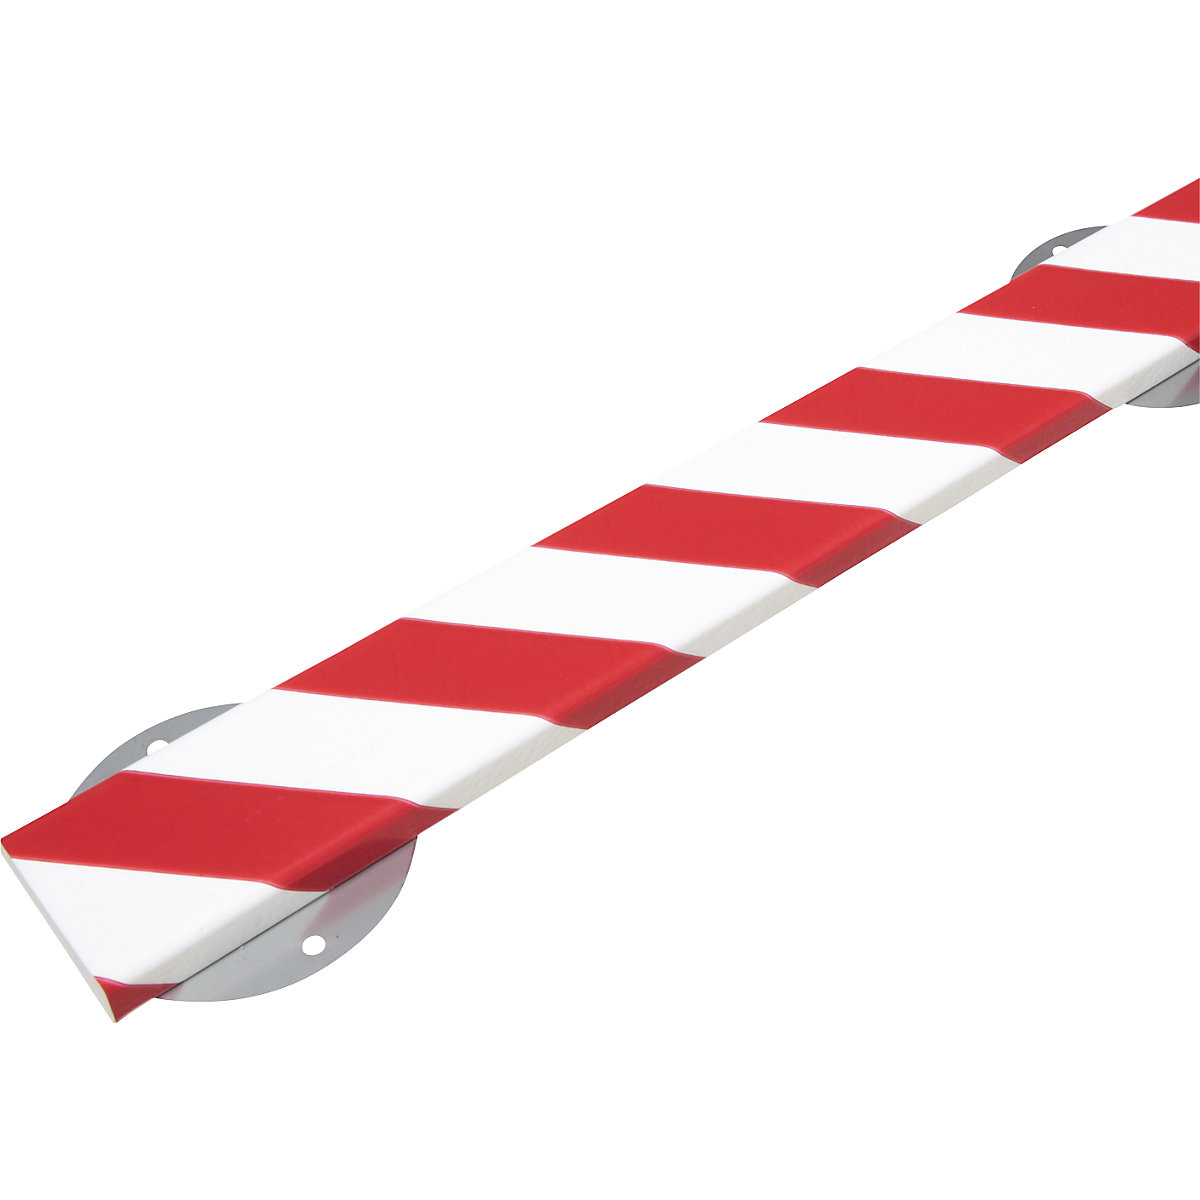 Protection des surfaces Knuffi® avec rail de montage – SHG, type S, pièce de 1 m, rouge/blanc